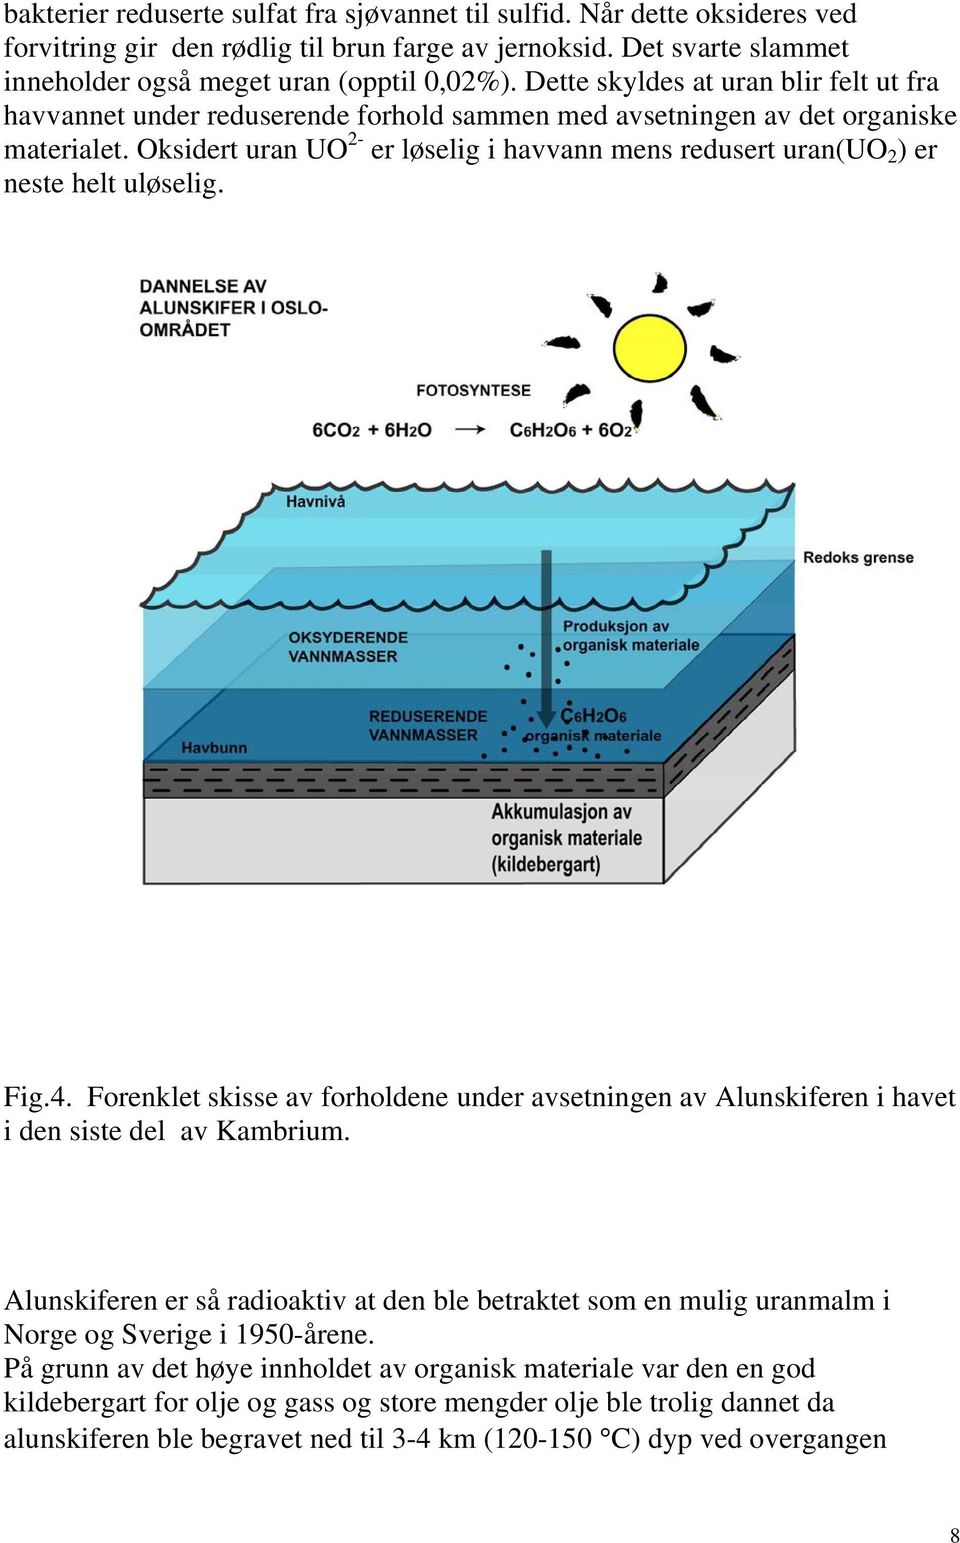 Oksidert uran UO 2- er løselig i havvann mens redusert uran(uo 2 ) er neste helt uløselig. Fig.4. Forenklet skisse av forholdene under avsetningen av Alunskiferen i havet i den siste del av Kambrium.